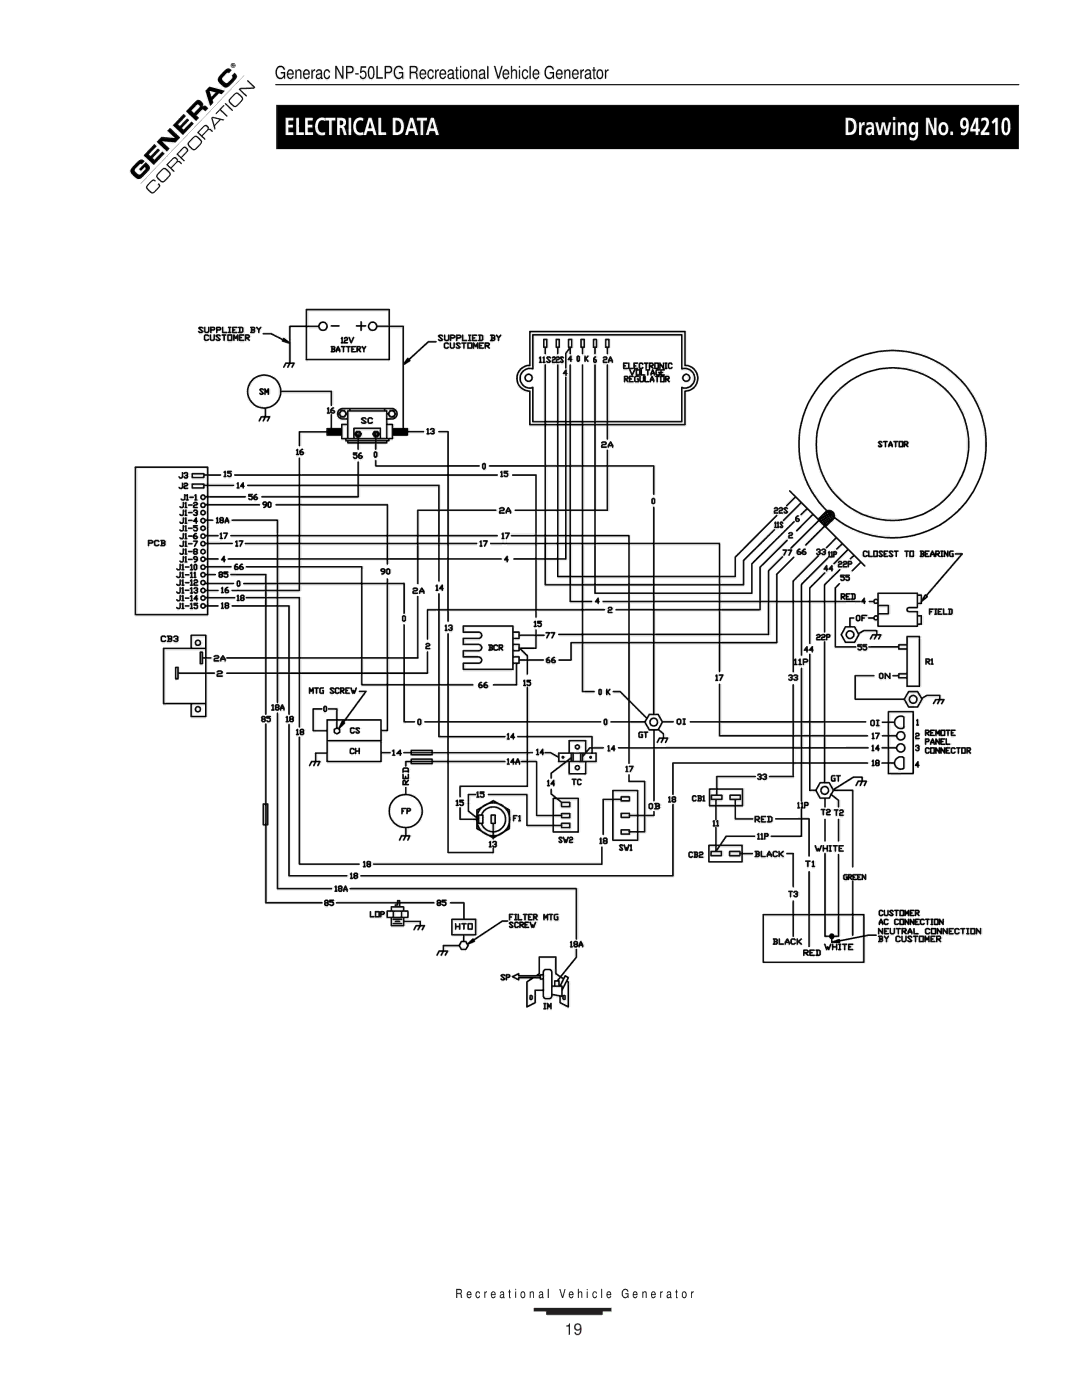 Generac NP-50LPG, 00919-0 owner manual Electrical Data 